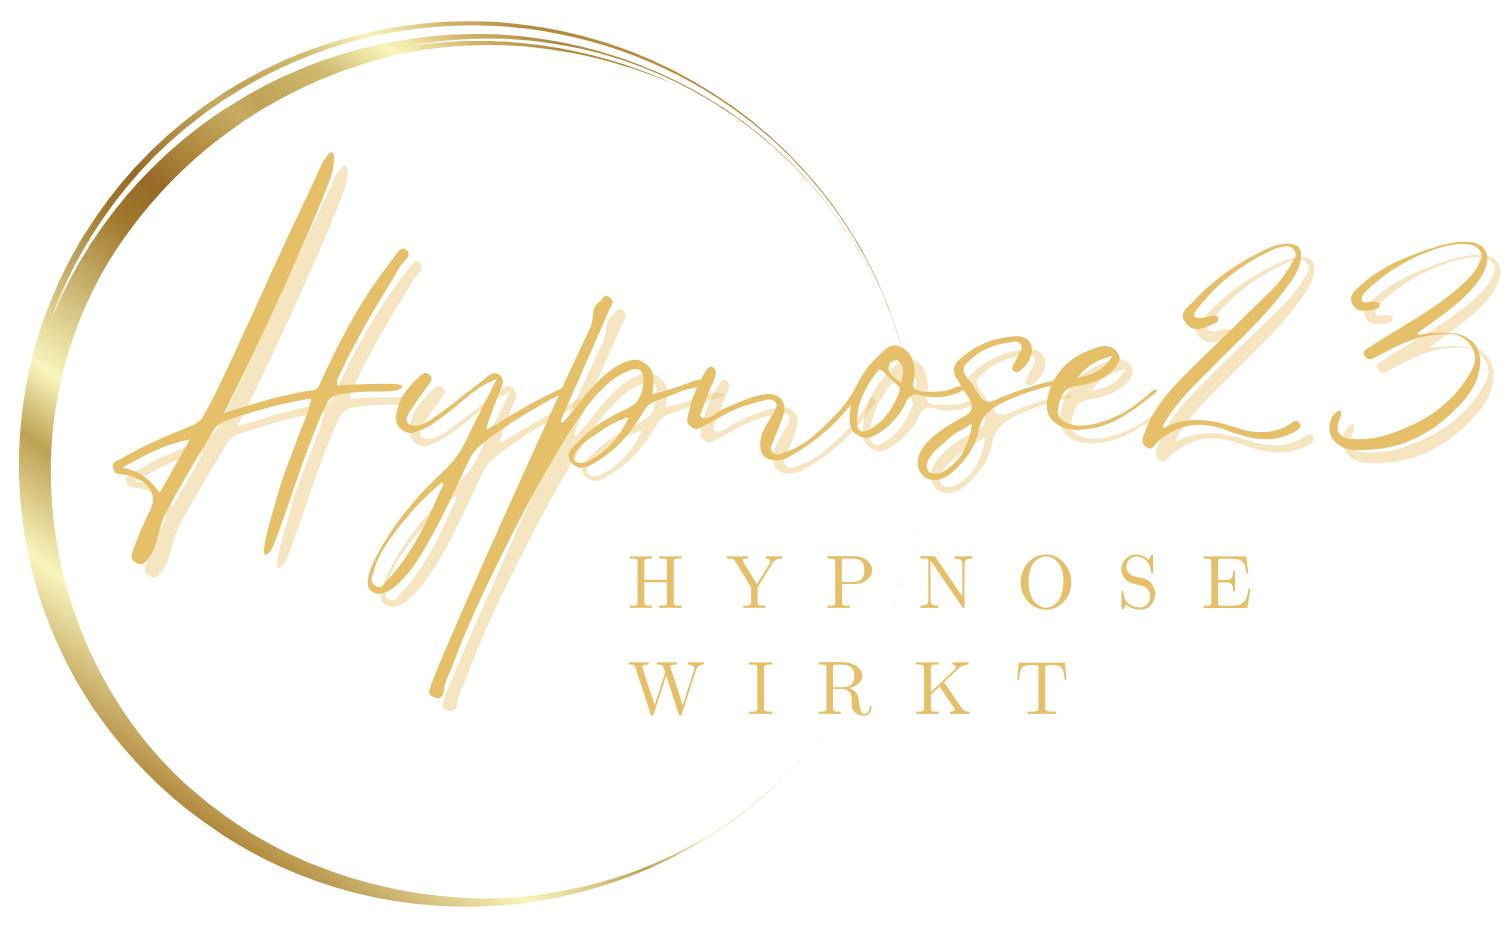 www.Hypnose23.com